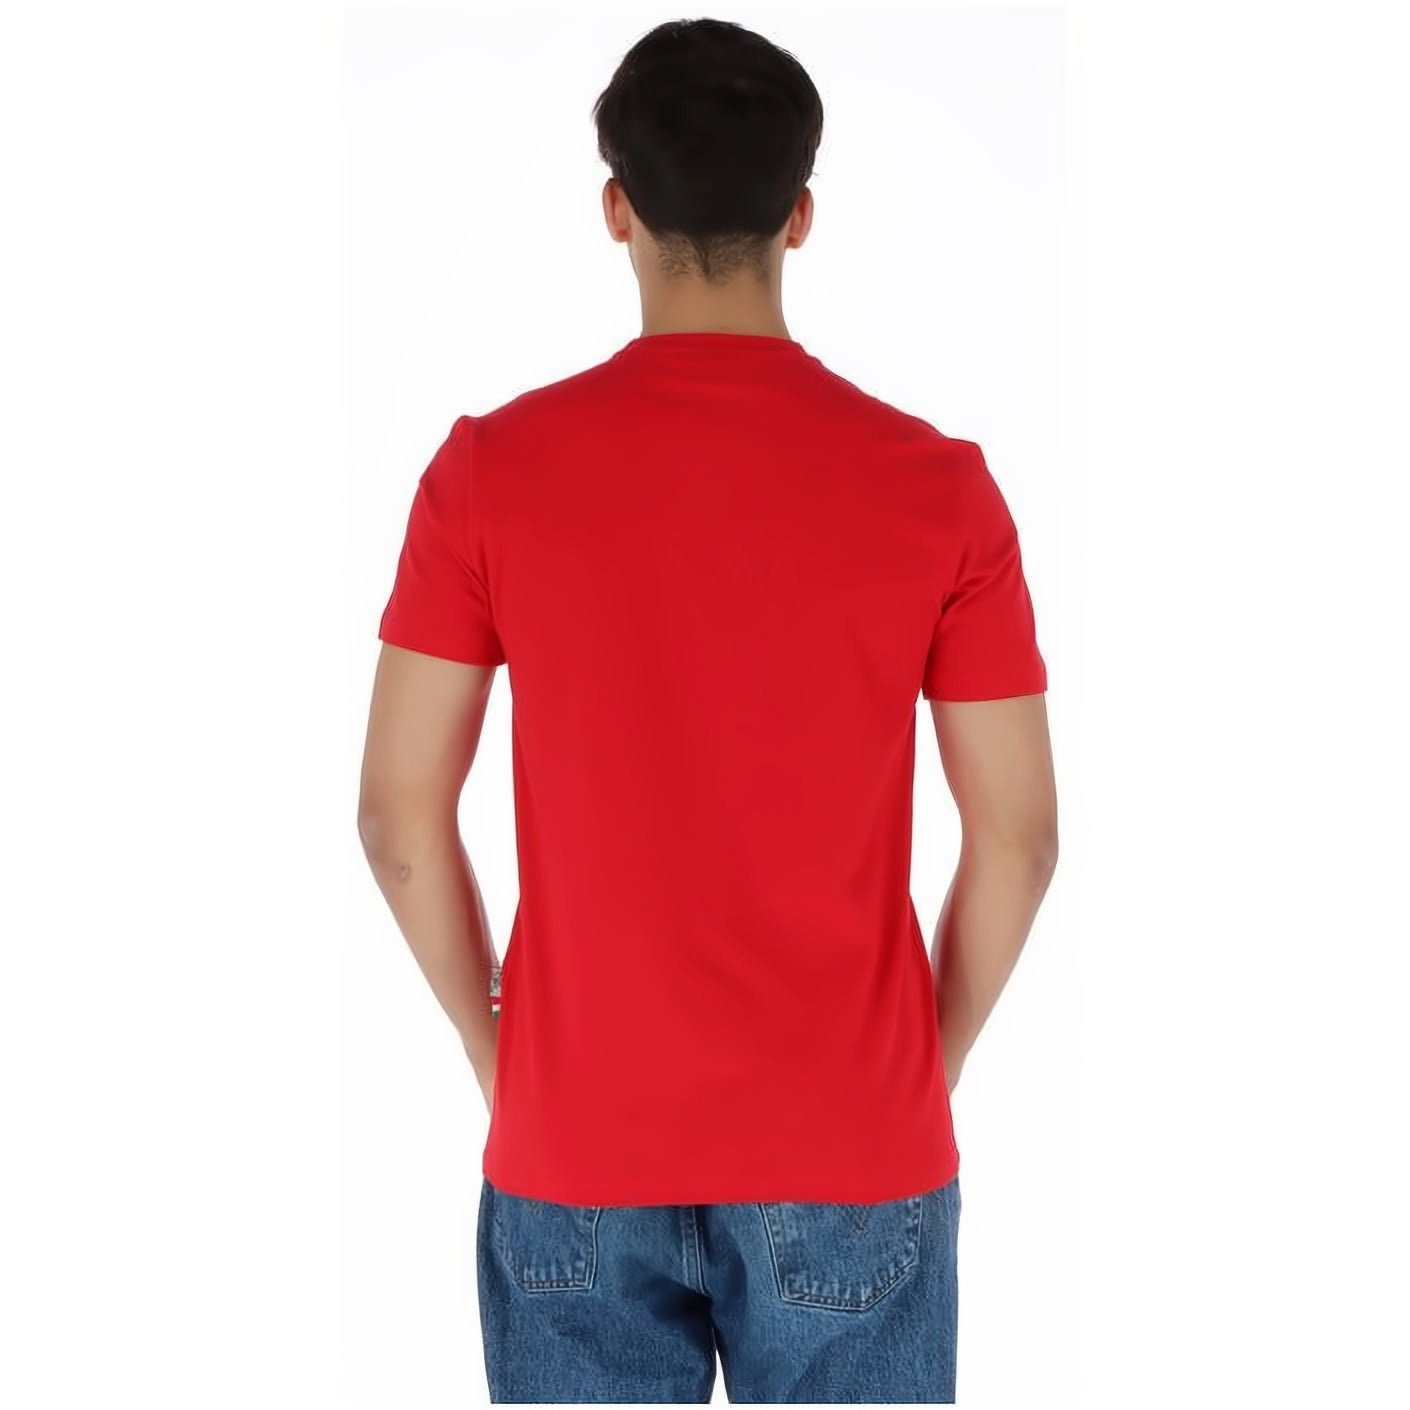 Stylischer T-Shirt PLEIN SPORT Farbauswahl NECK hoher Look, ROUND vielfältige Tragekomfort,